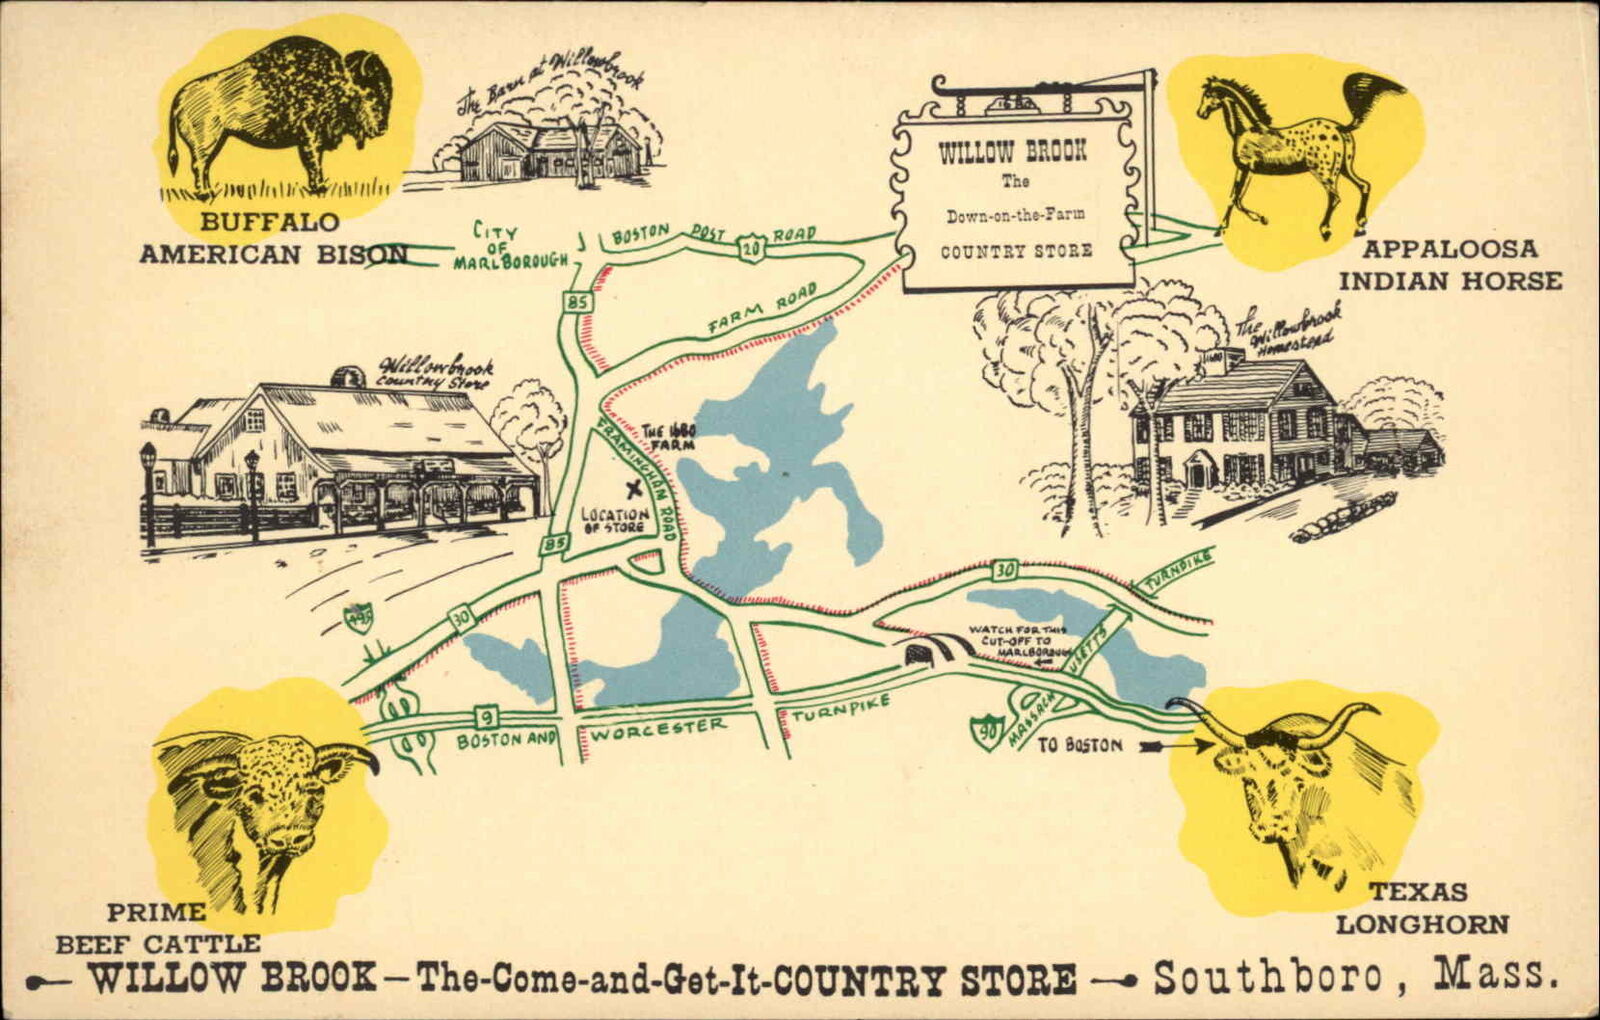 Southboro Massachusetts MA Store Advertisement Map 1950s-60s Postcard